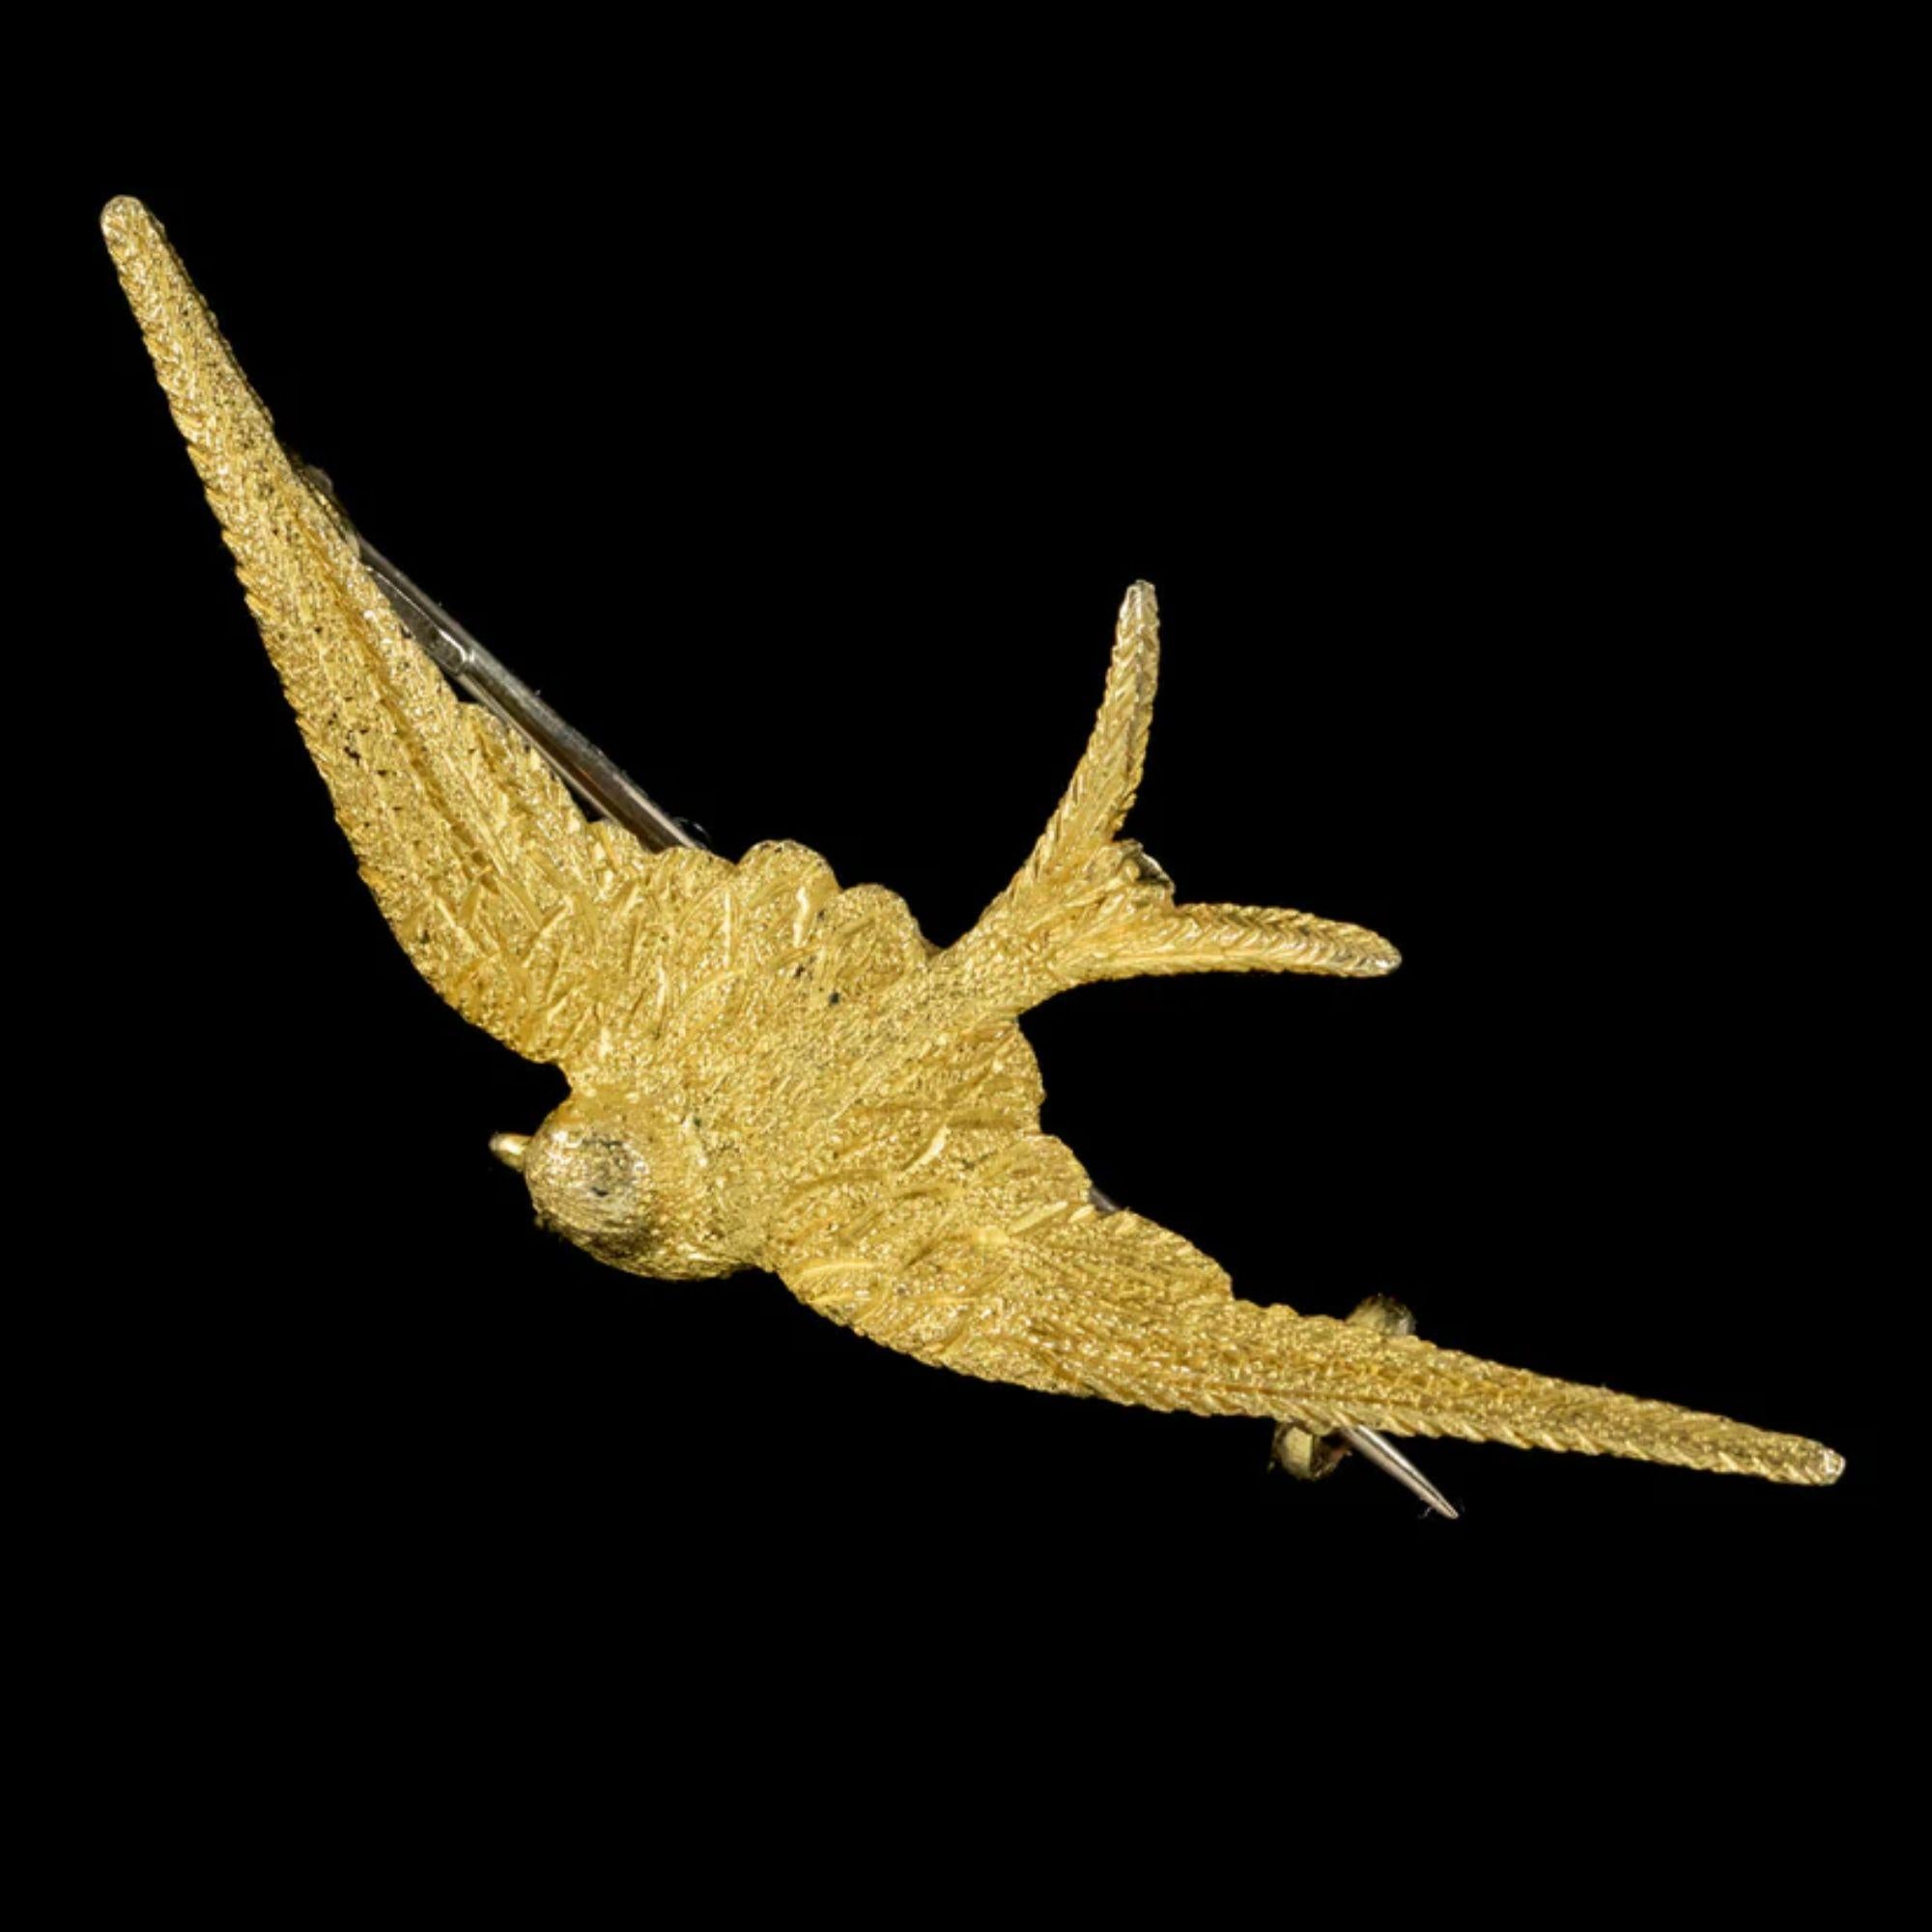 Une jolie broche hirondelle de la fin de l'ère victorienne, façonnée en or 15ct avec une texture complexe de plumes sur le dos et le devant.

L'image de l'hirondelle était populaire à l'époque victorienne et était souvent offerte en gage de